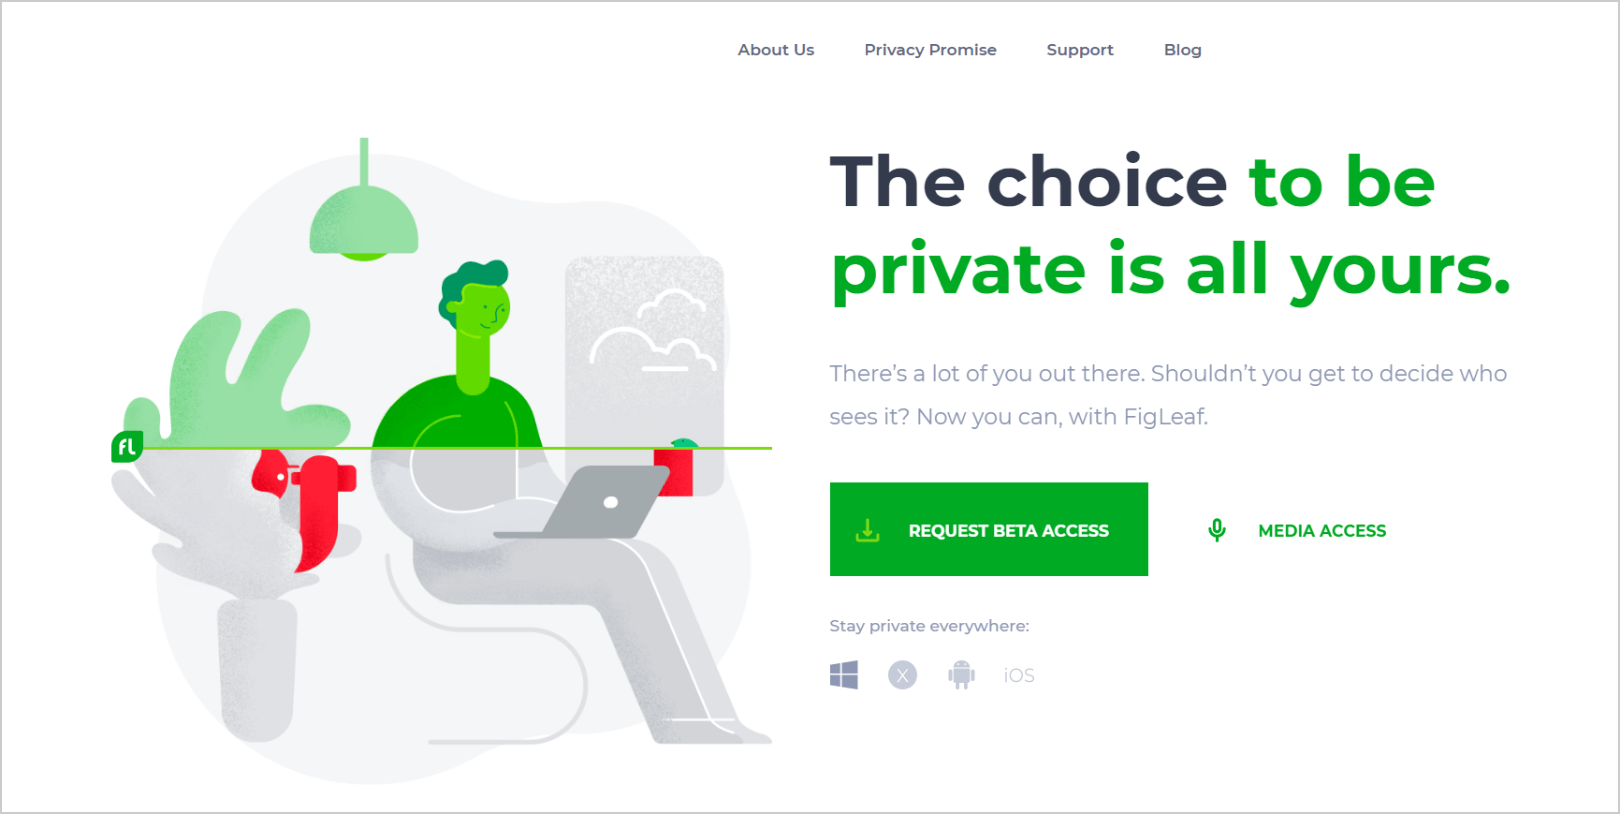 FigLeaf online privacy app startup.